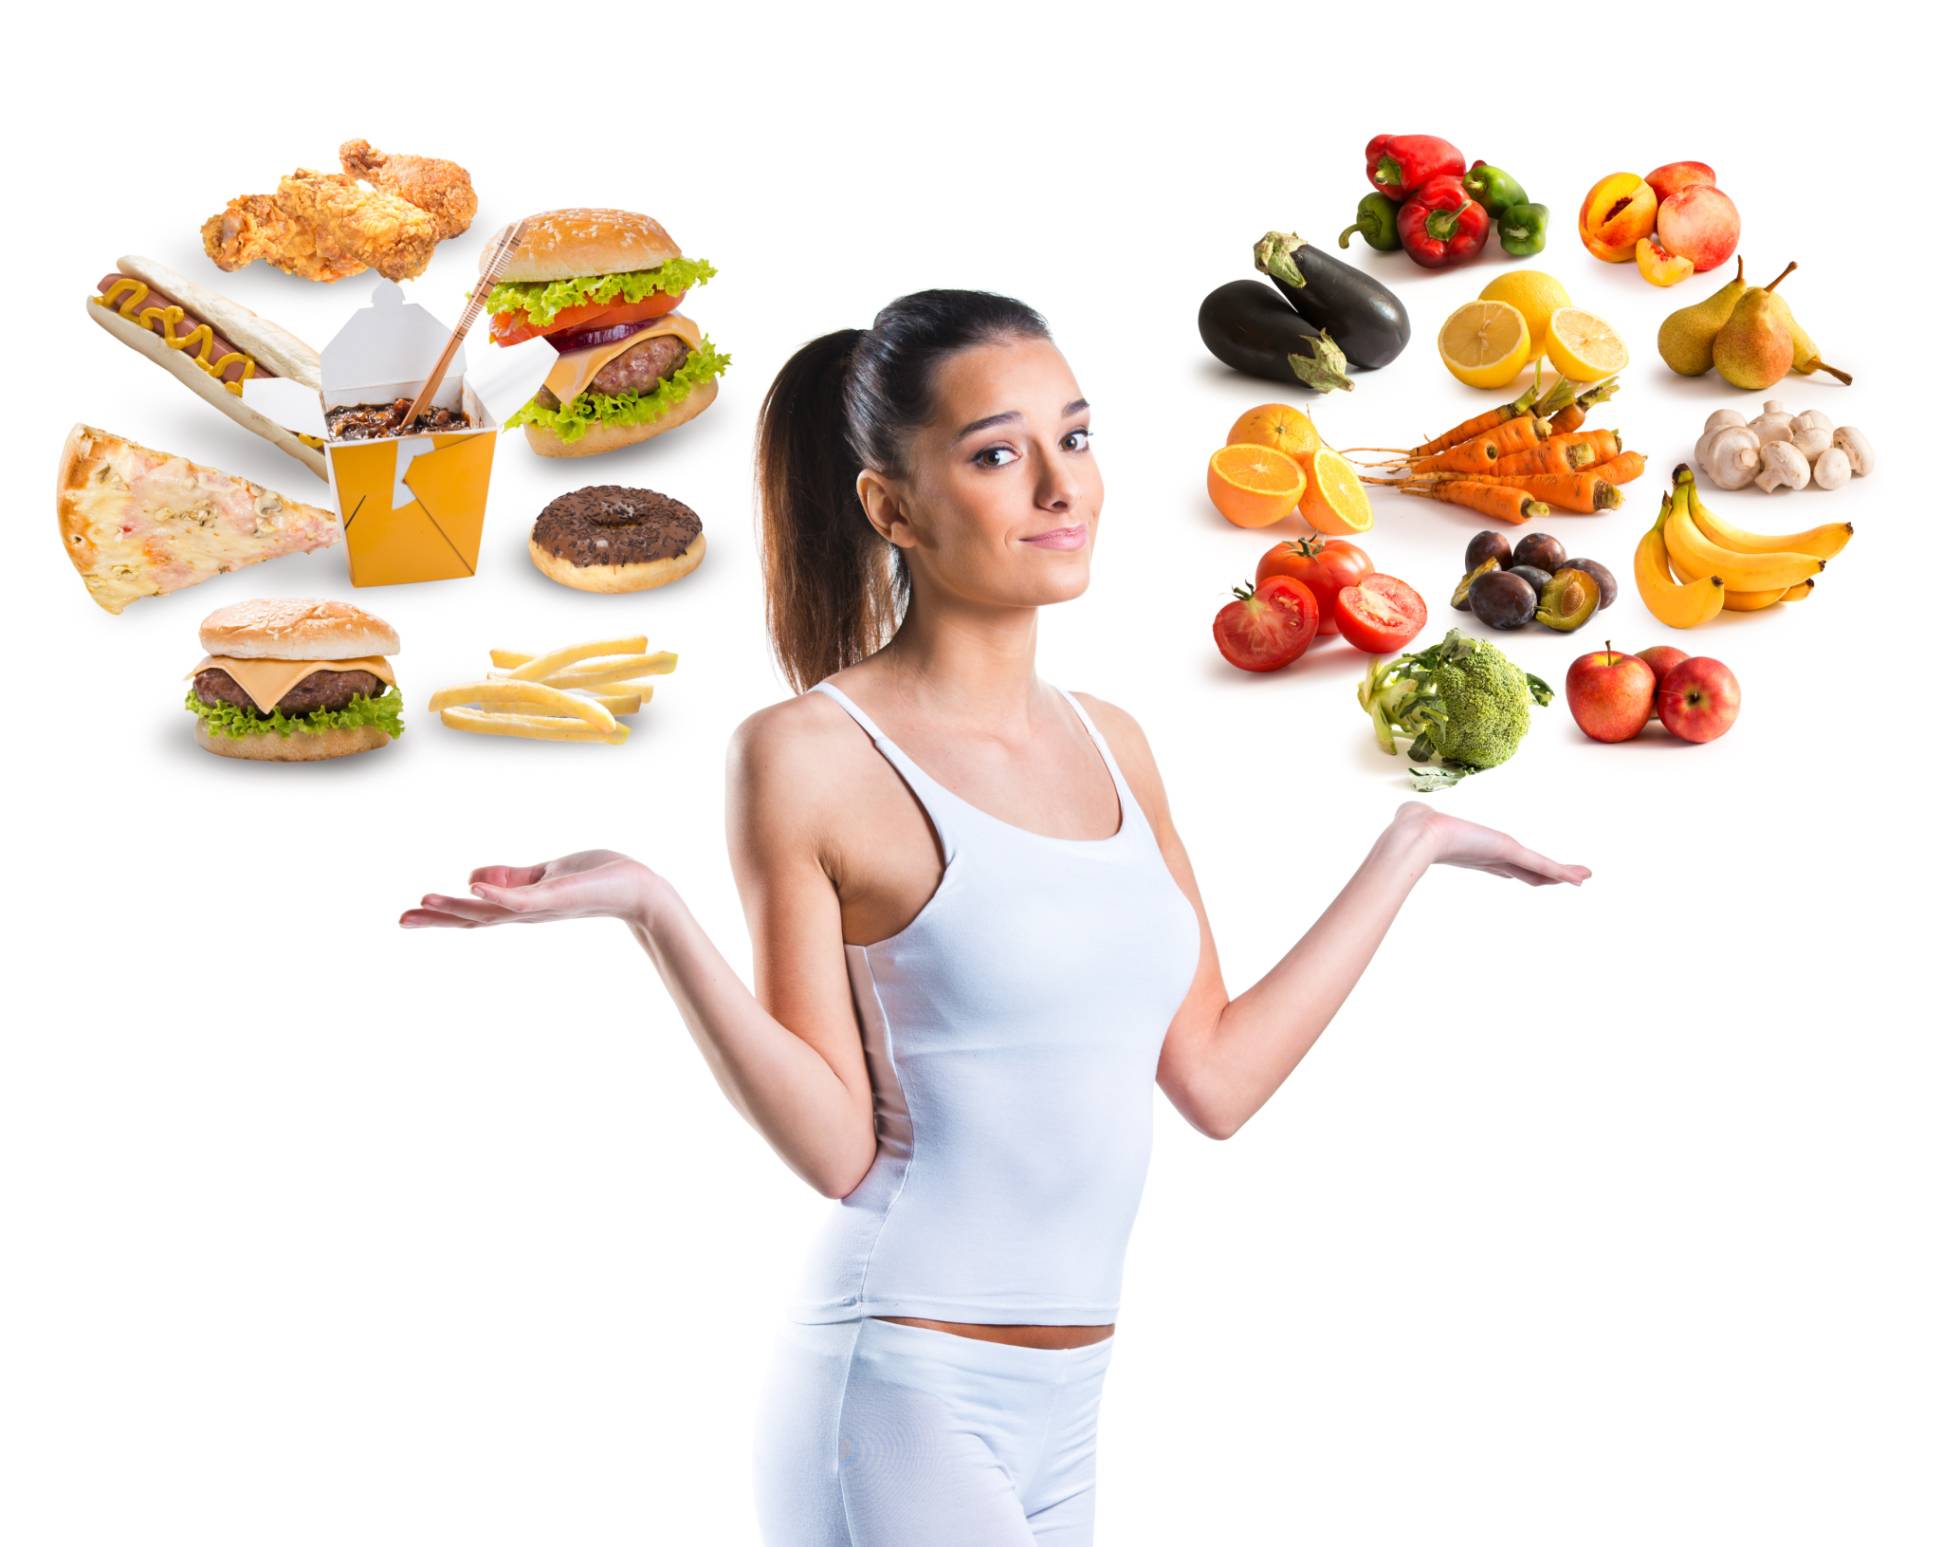 Питание lchf – это возможность похудеть без голода на низкоуглеводной диете от доктора андреаса энфельдта.